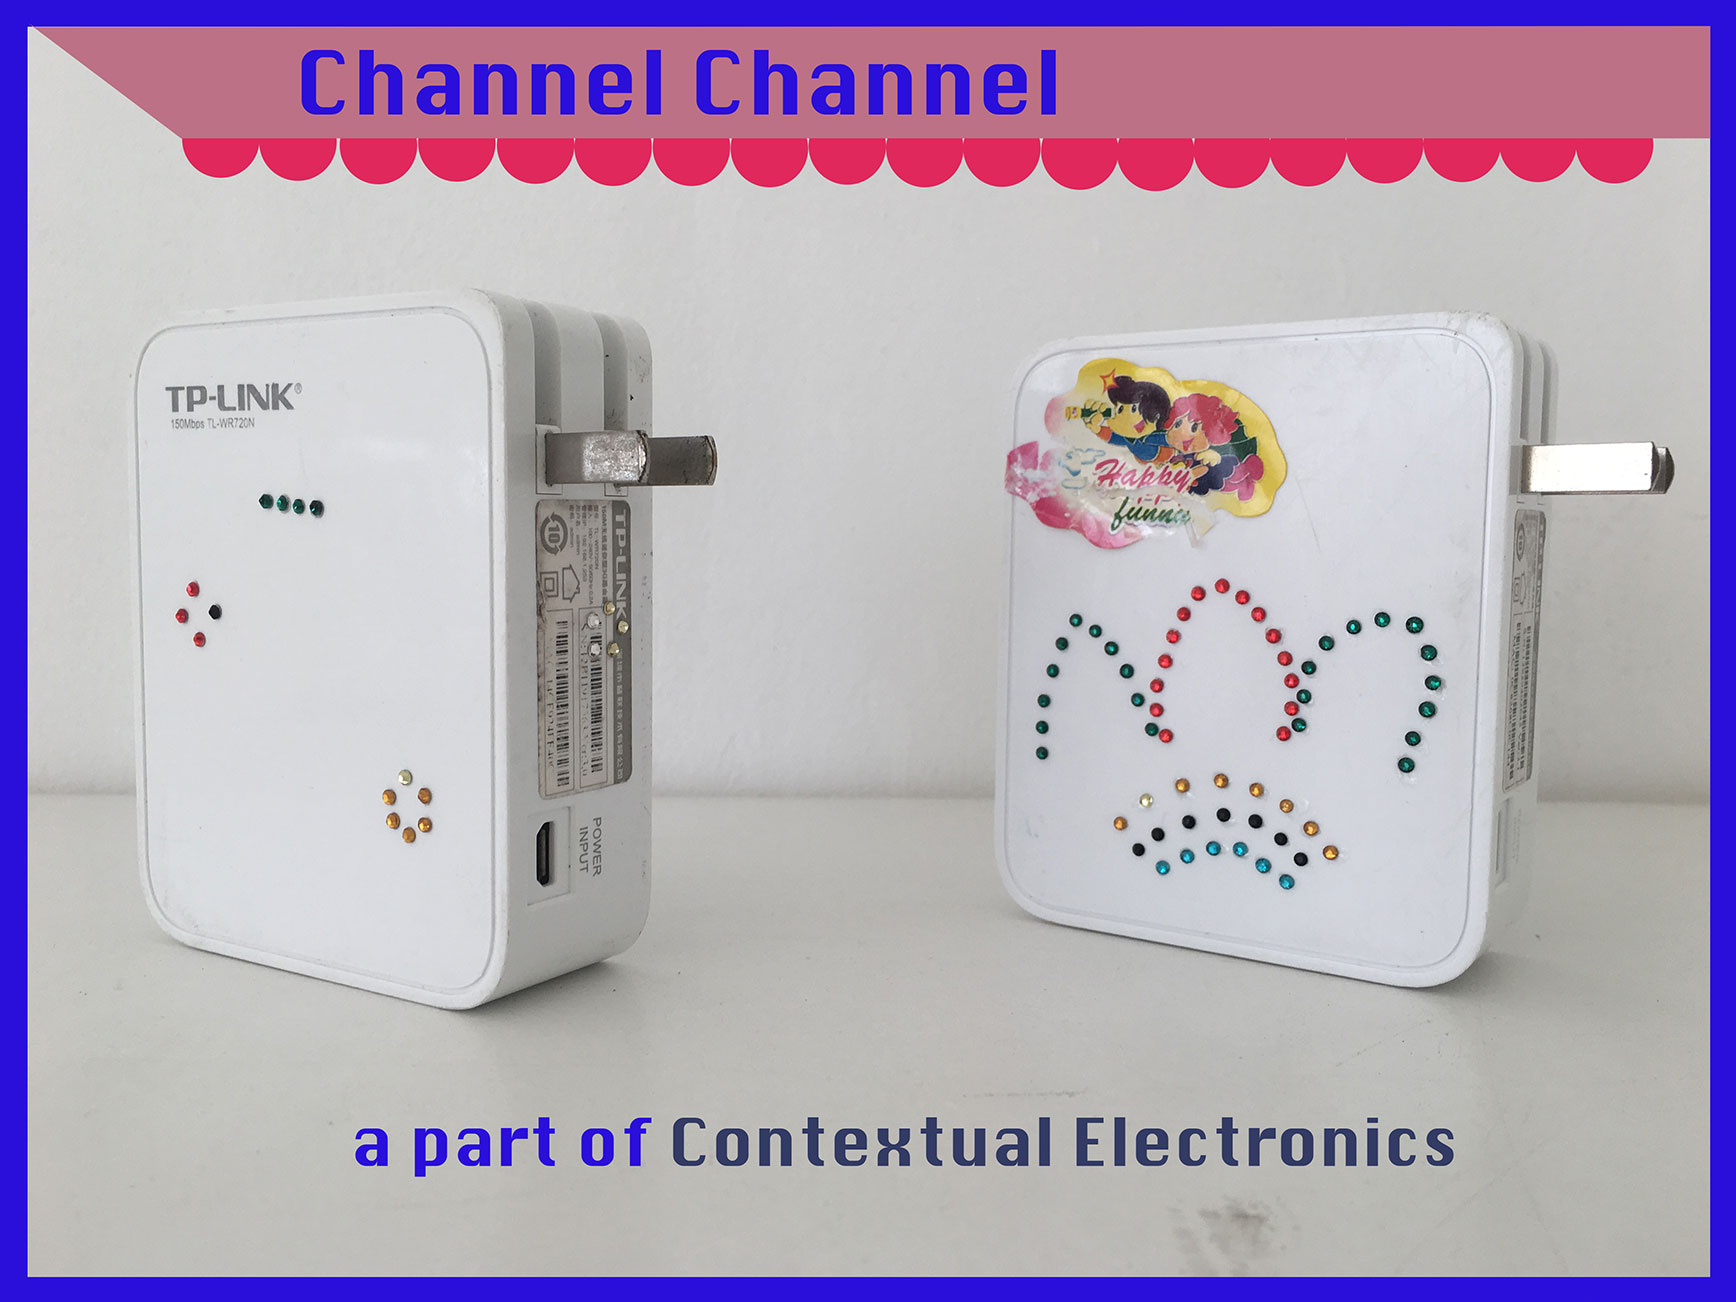 Channel channel, a network for VPN access, Biyi Wen